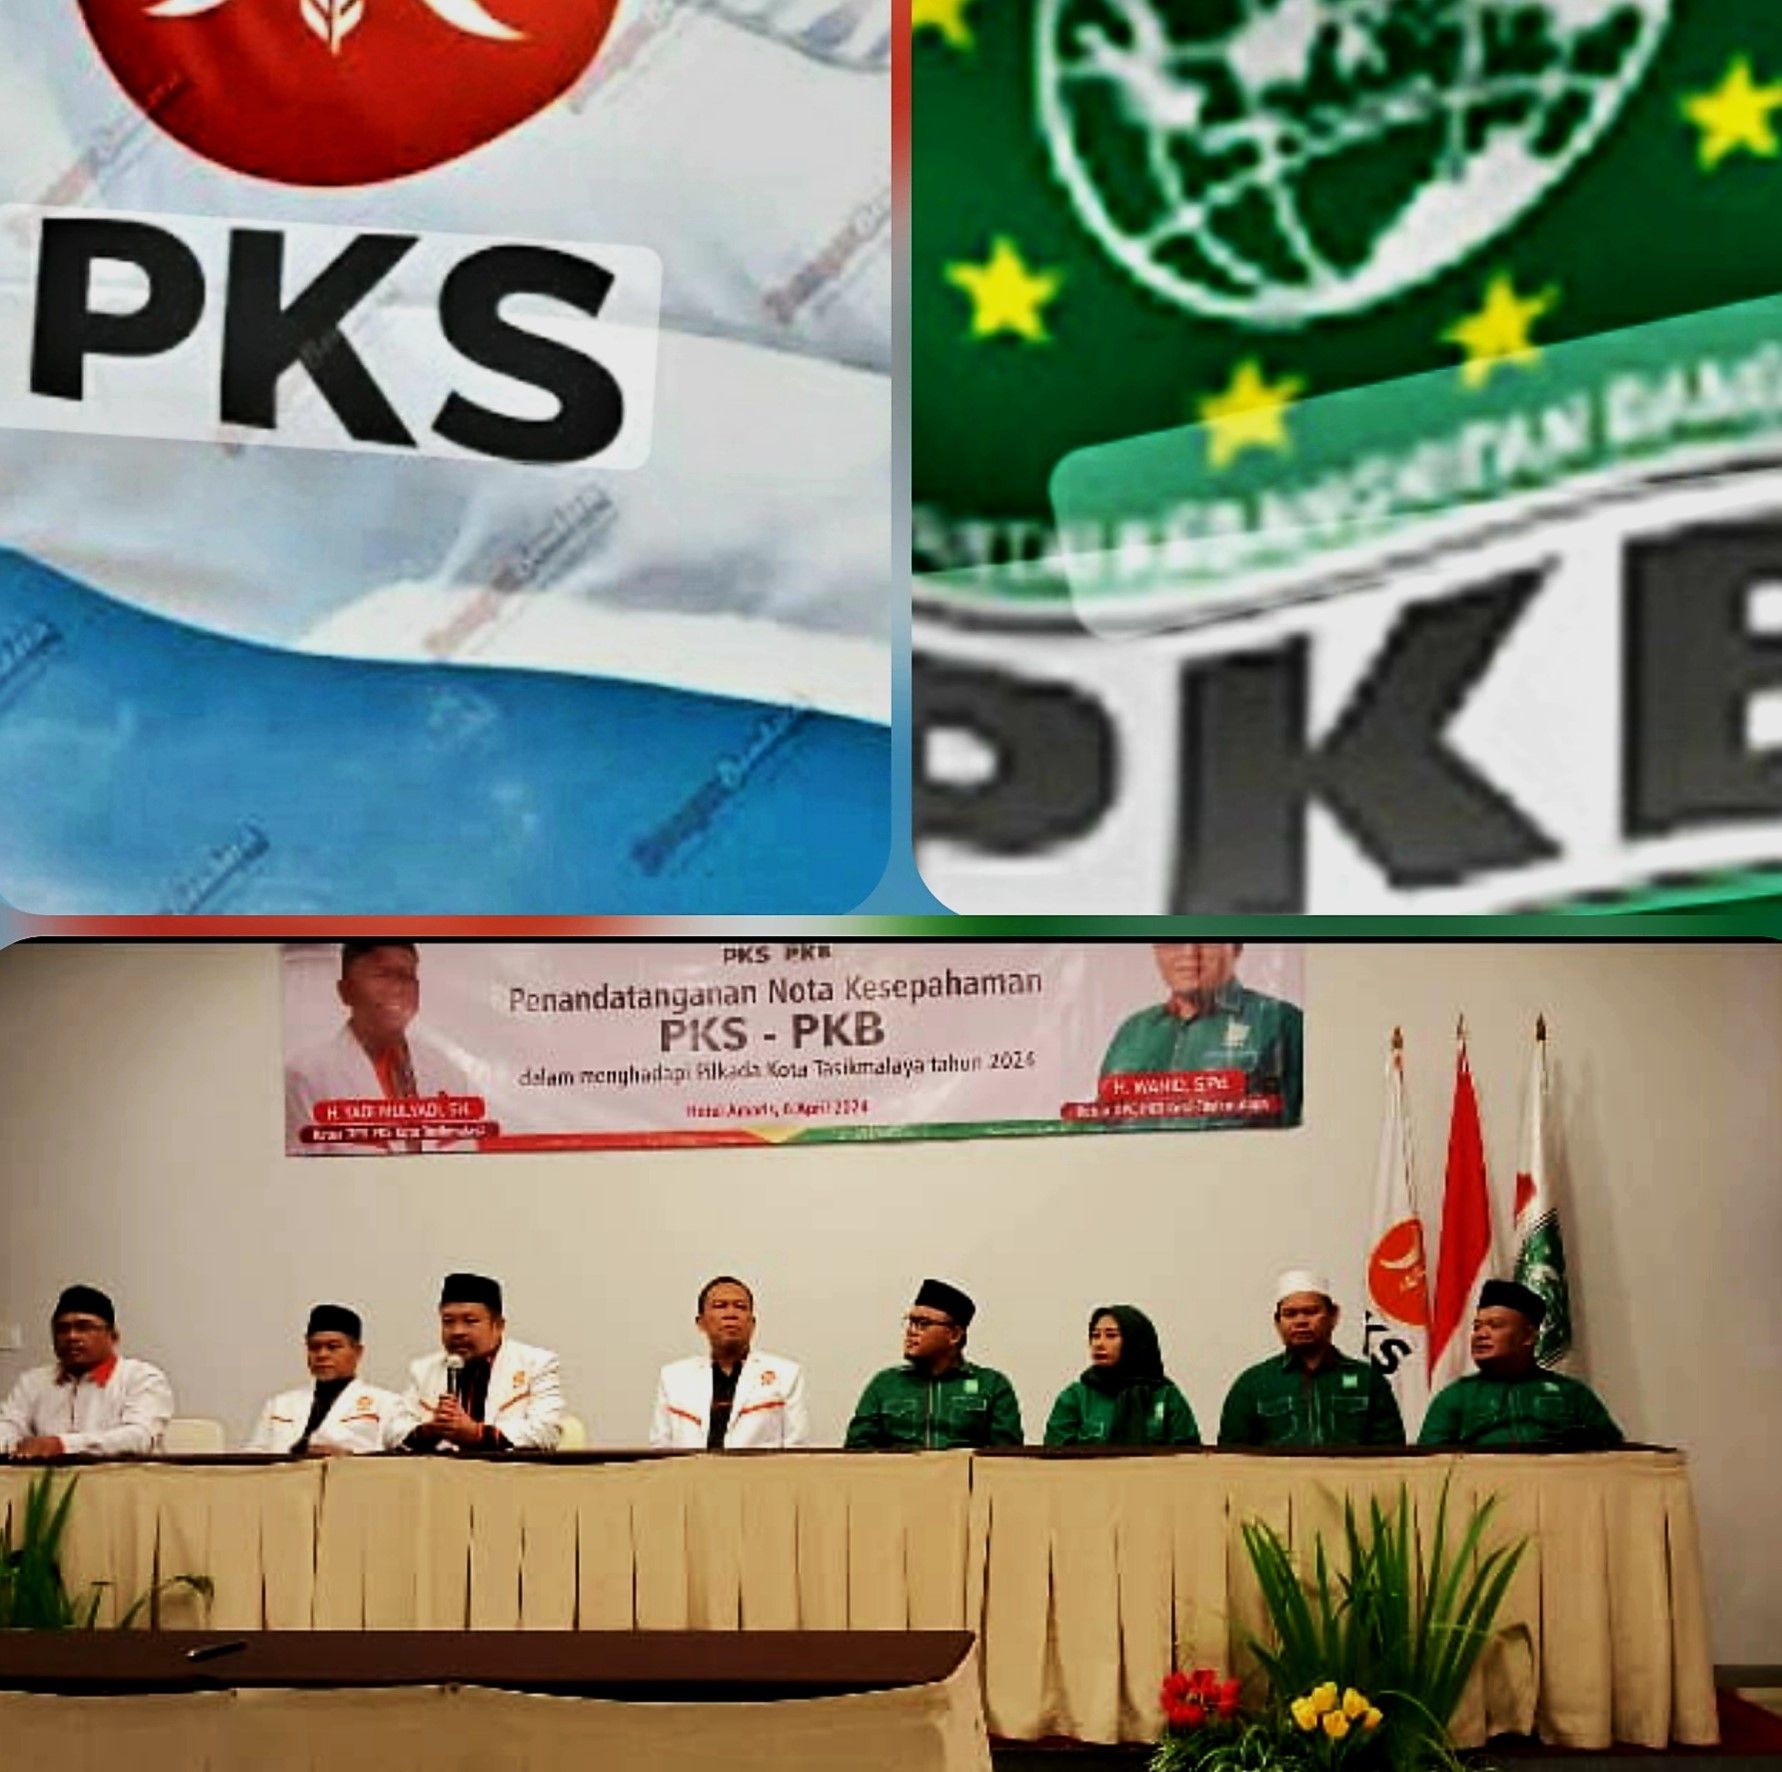 Pembentukan dan penandatangan Nota Kesepahaman antara PKB-PKS di sebuah hotel